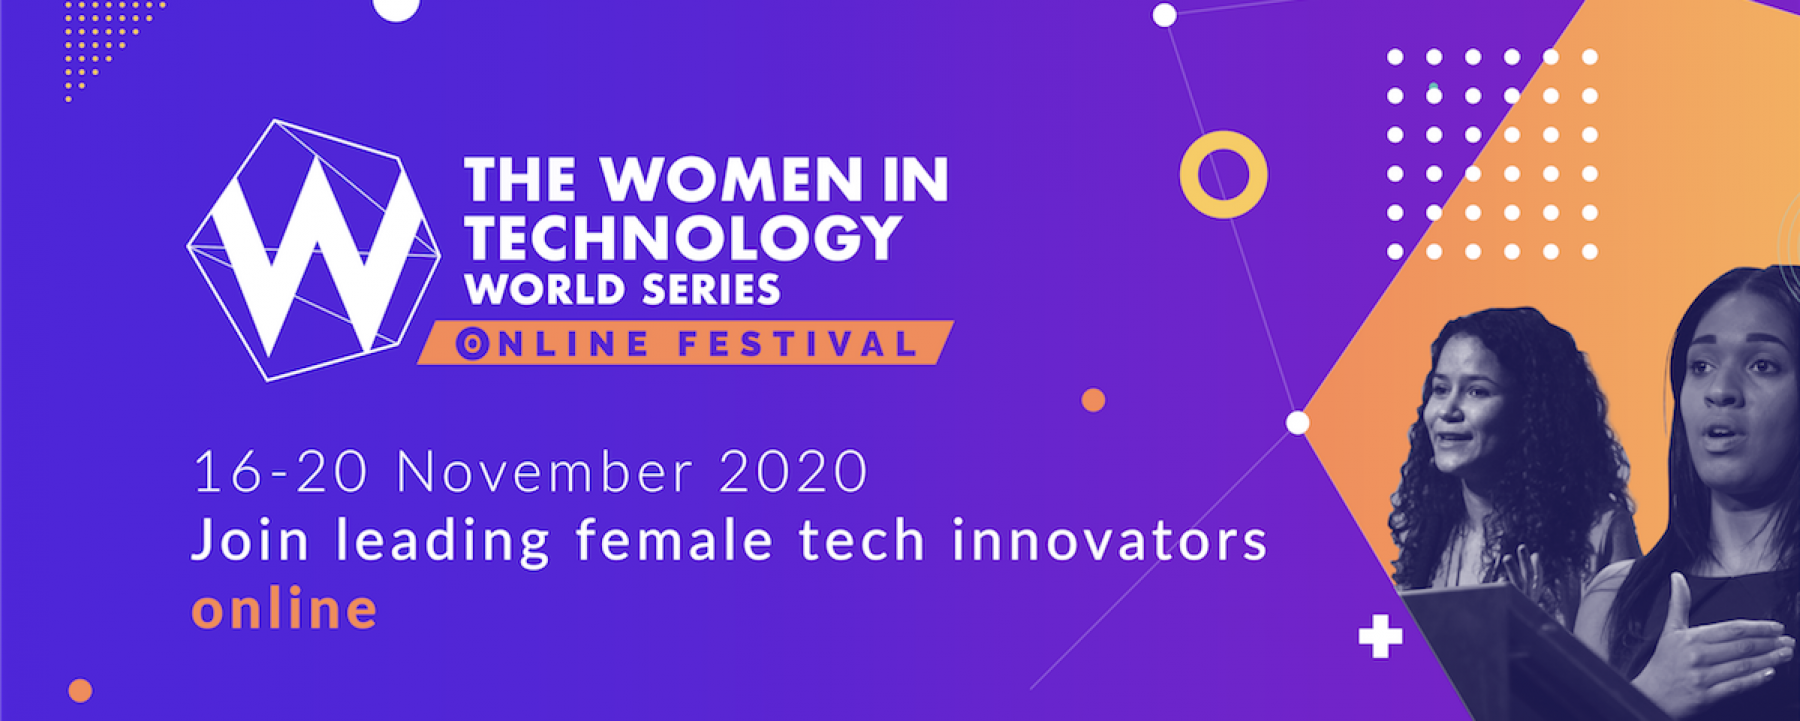 Festival en ligne The Women in Technology World Series - Online Festival, du 16 au 20 novembre 2020, organisé par Ascend Global Media 